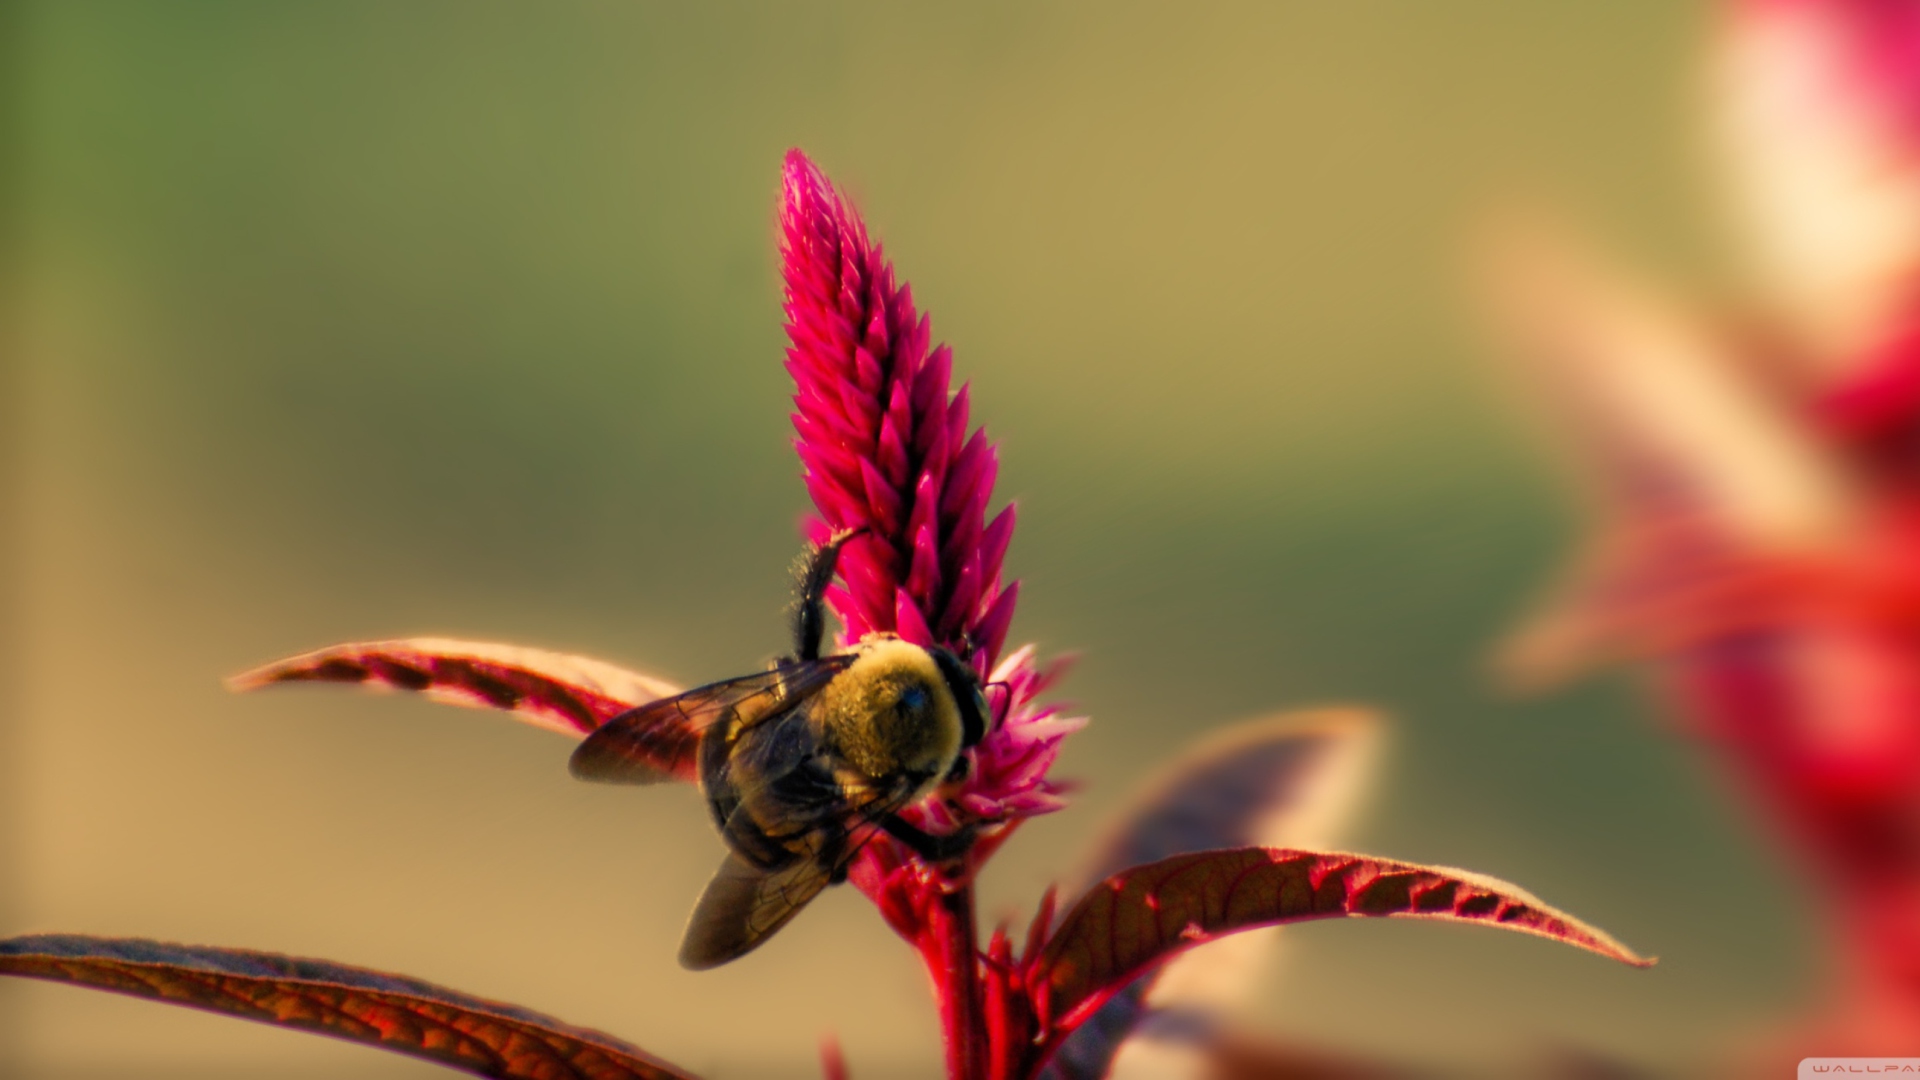 Обои Bee On Pink Flower 1920x1080